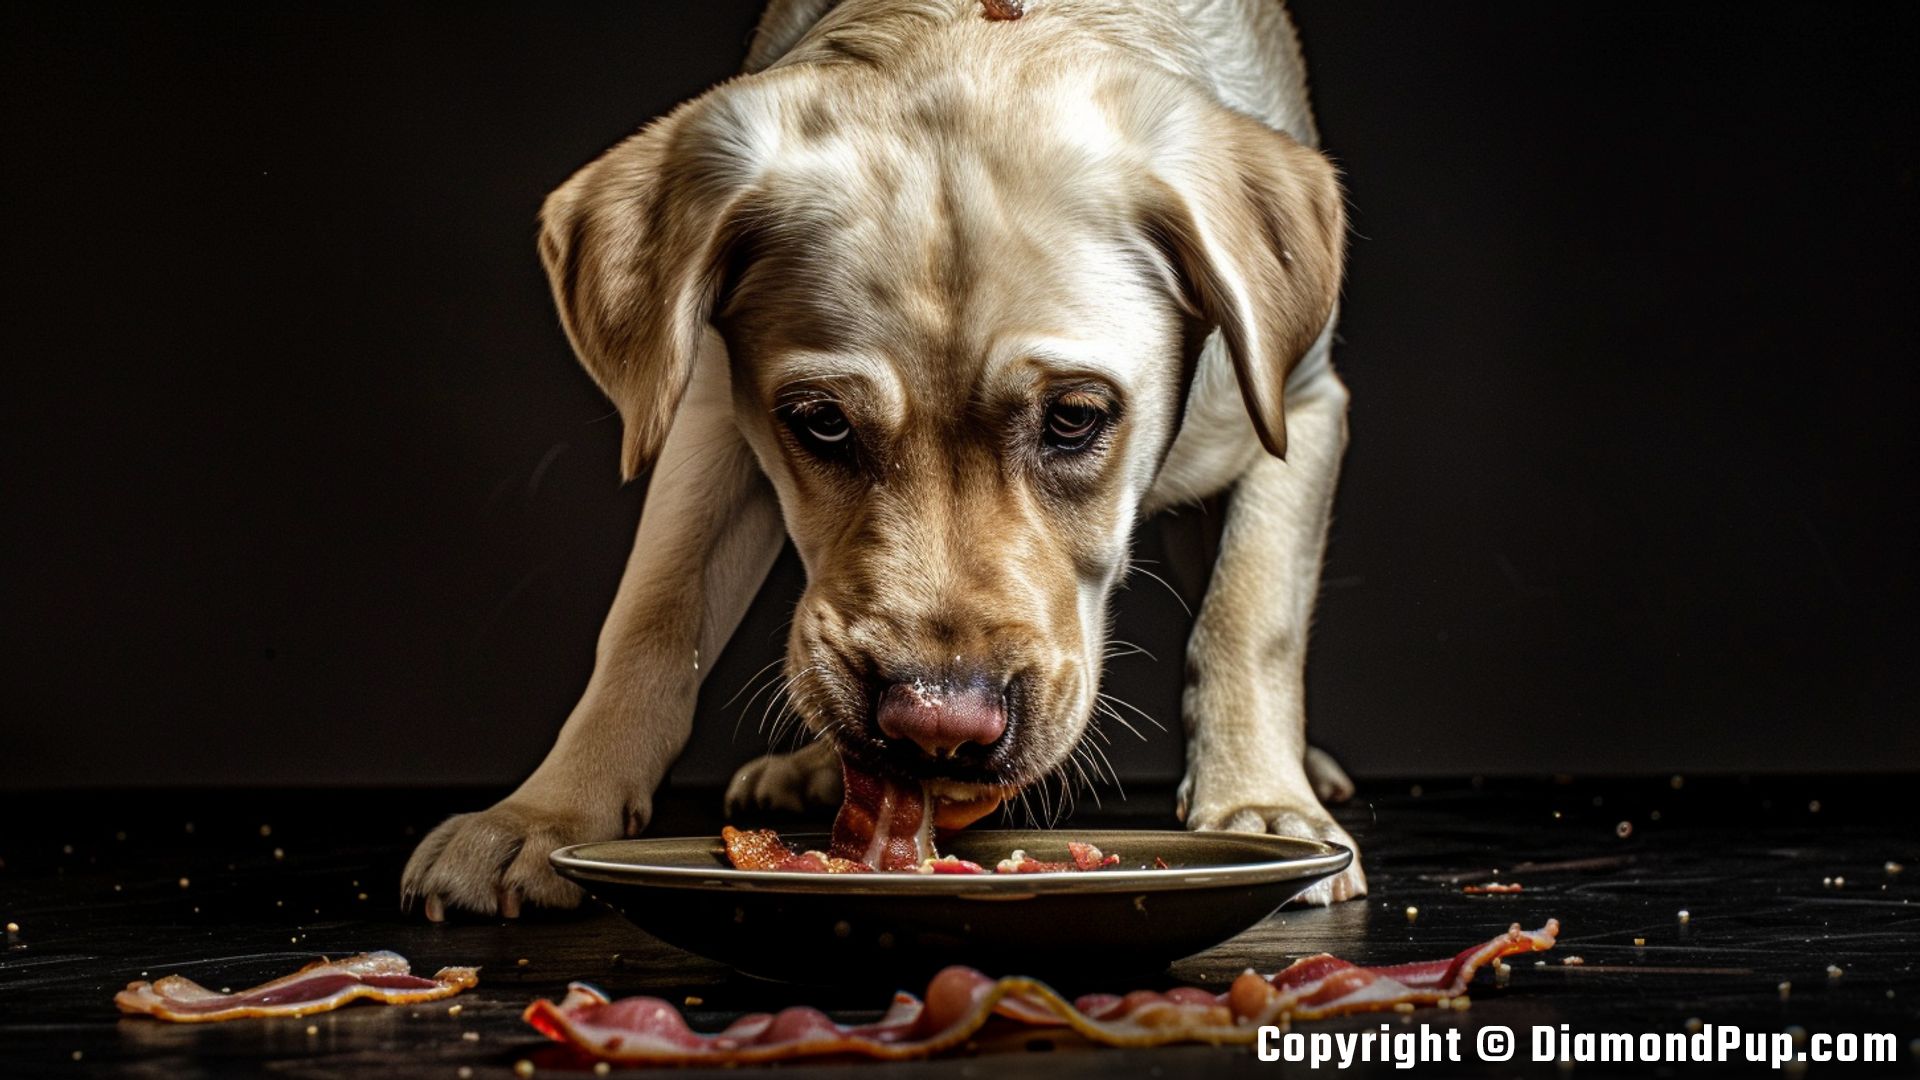 Image of an Adorable Labrador Eating Bacon